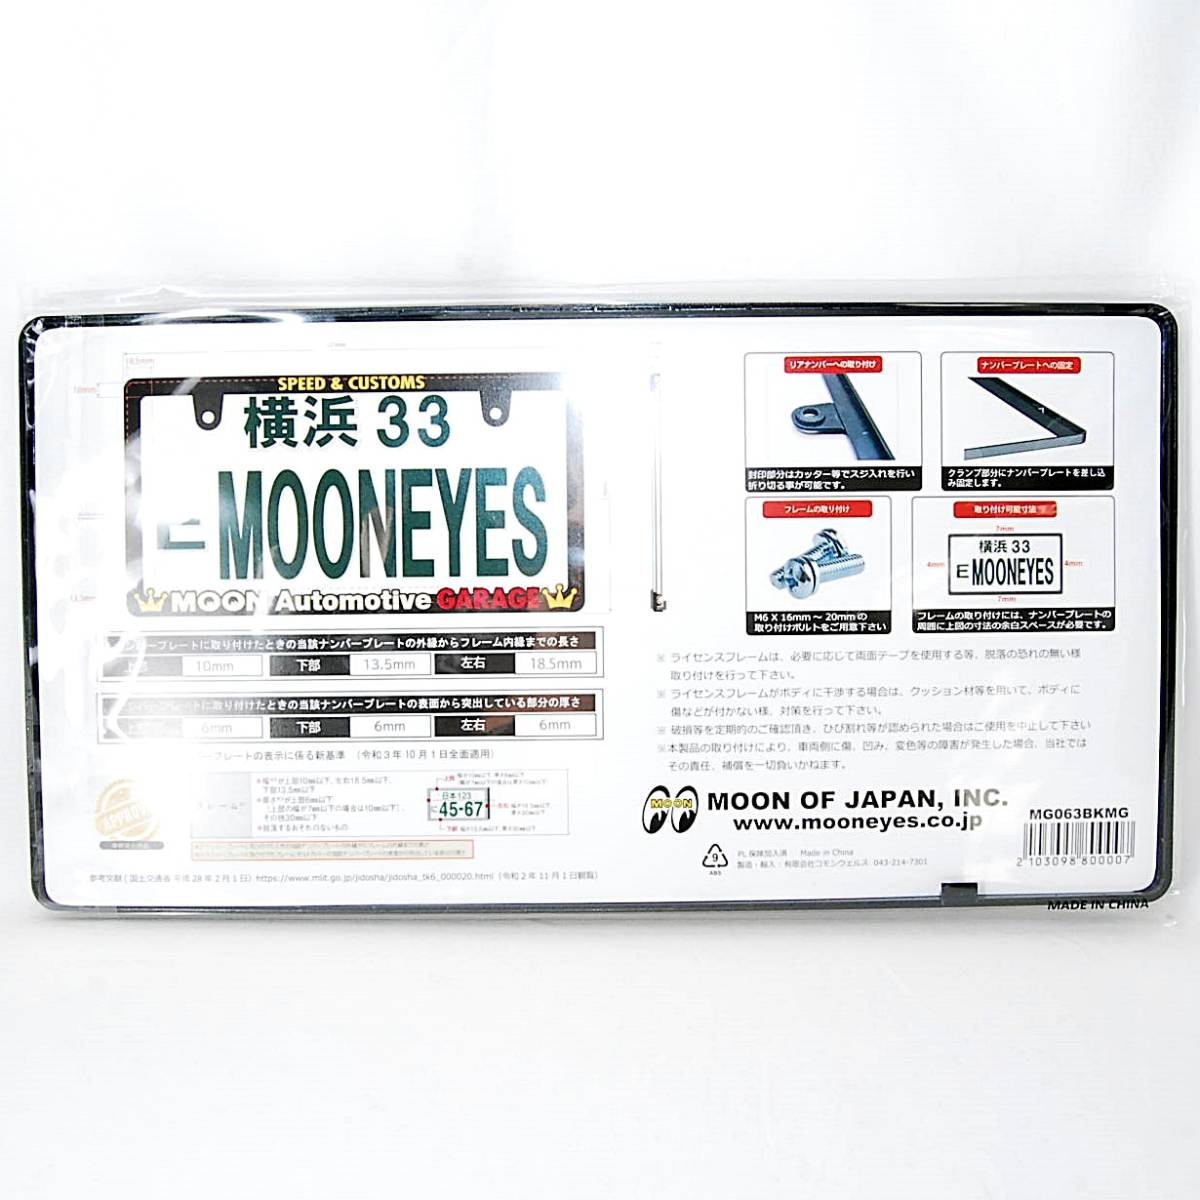 [ анонимность рассылка ] стандартный товар Raised MOON Garage Logo обтягивающий рамка номерного знака 2 шт. комплект MG063BKMG moon I z рамка для номера 